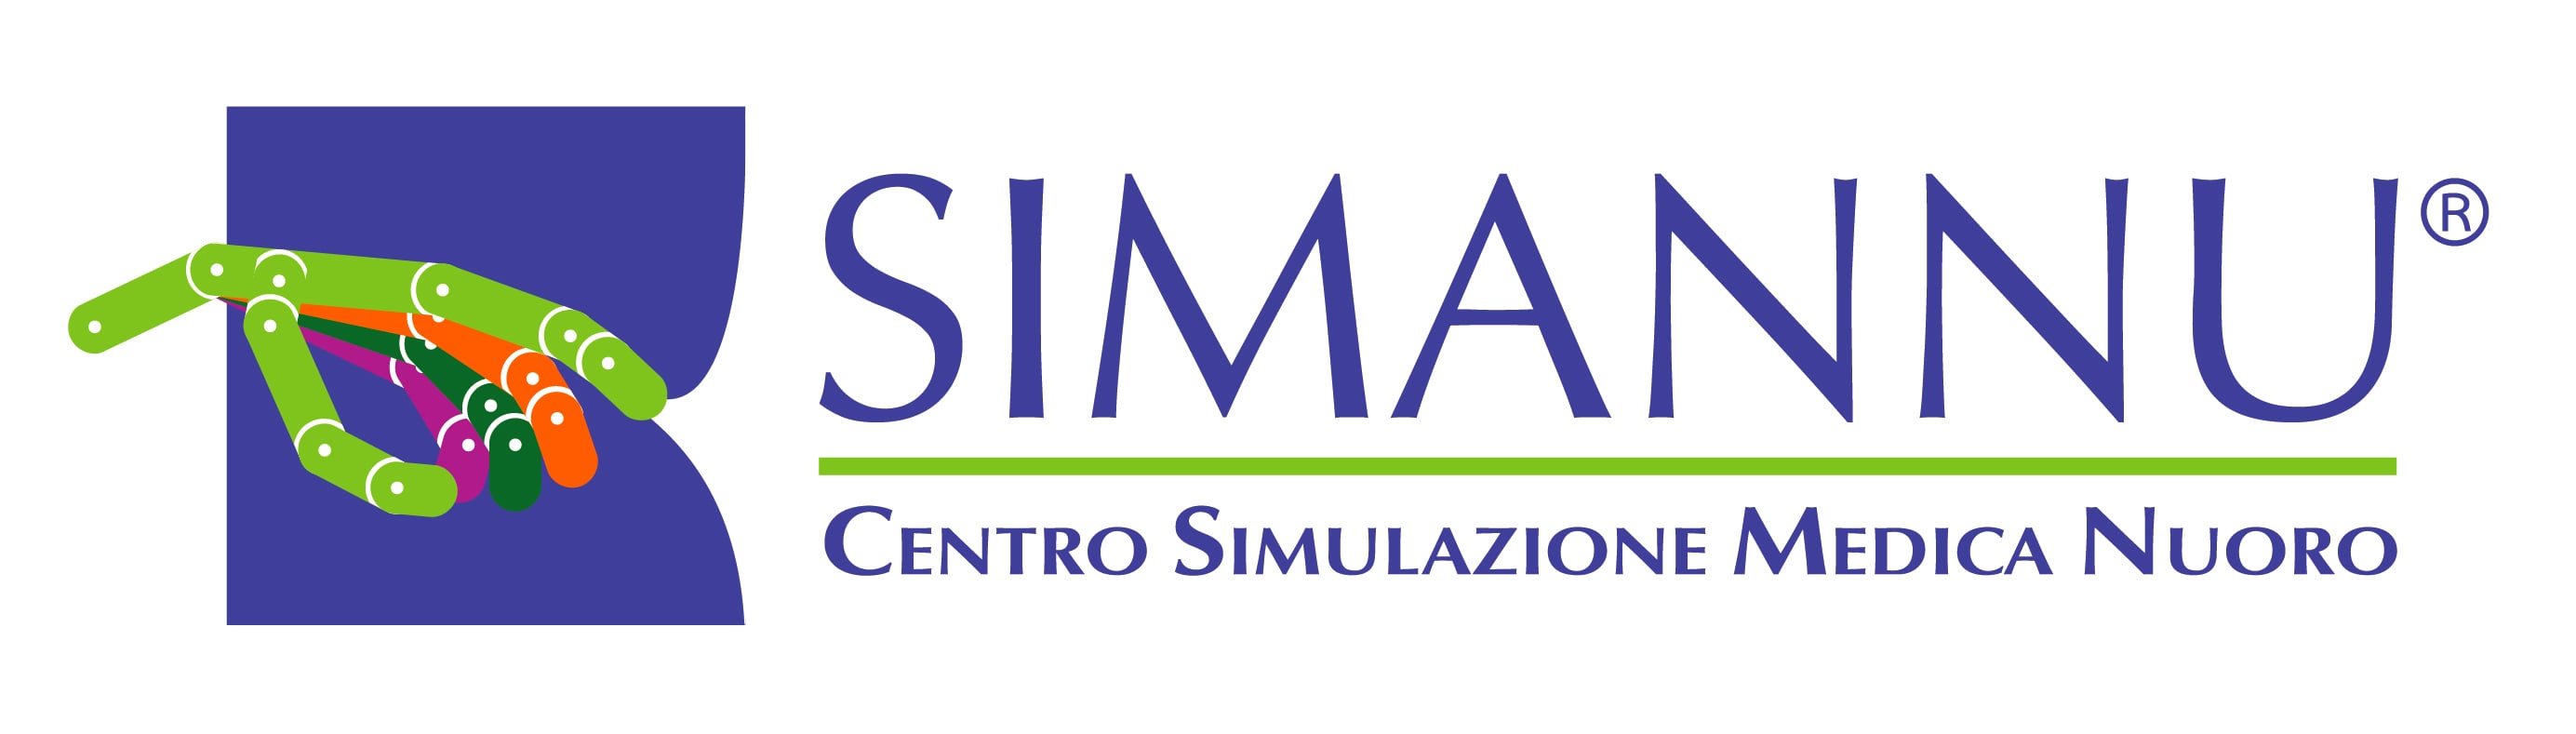 Simannu – Centro Simulazione Medica Nuoro